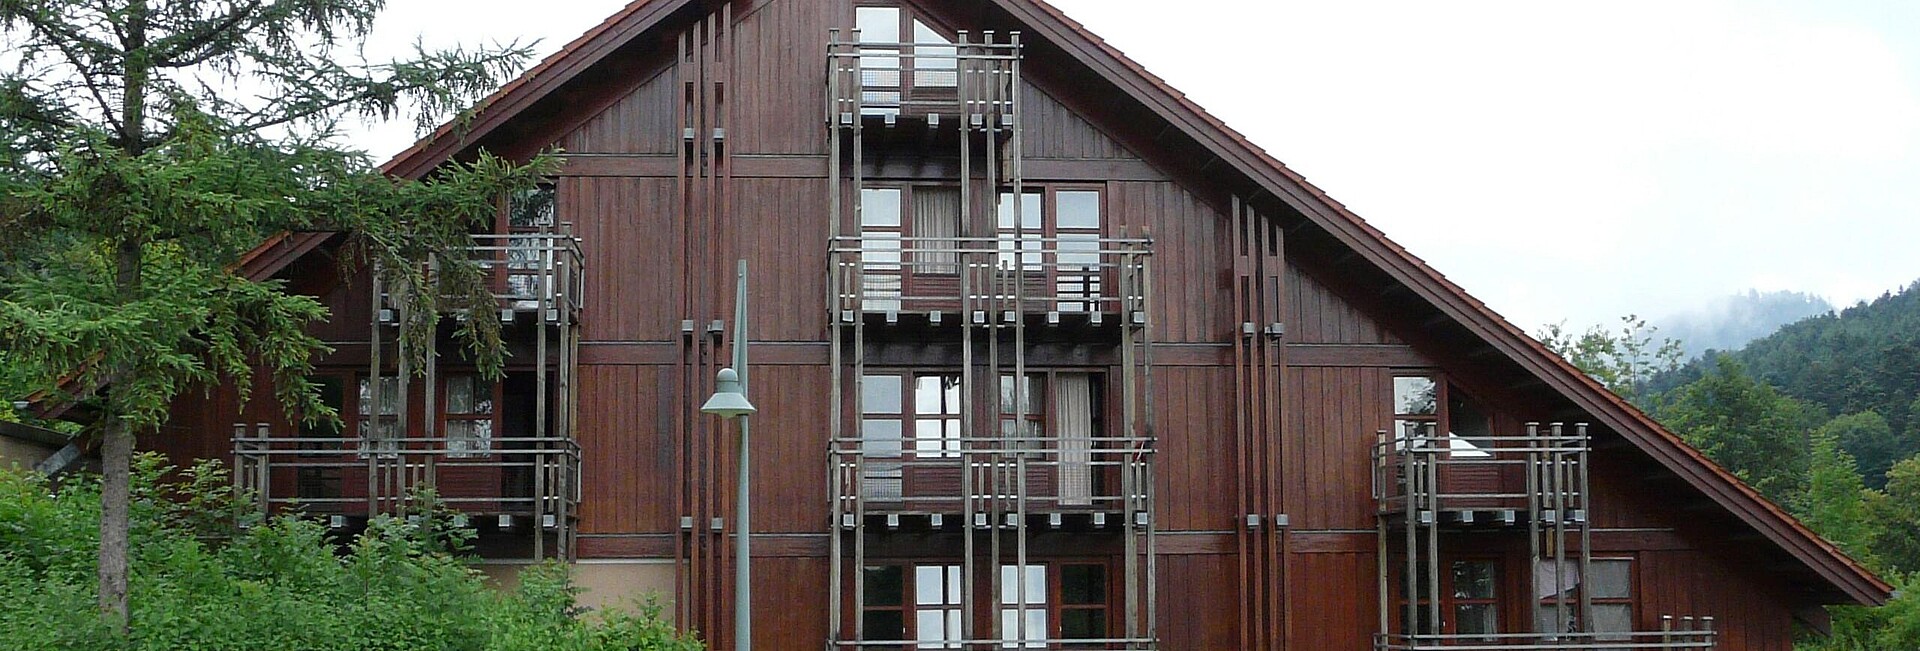 Ansicht Wohnheimgebäude - Holzbau